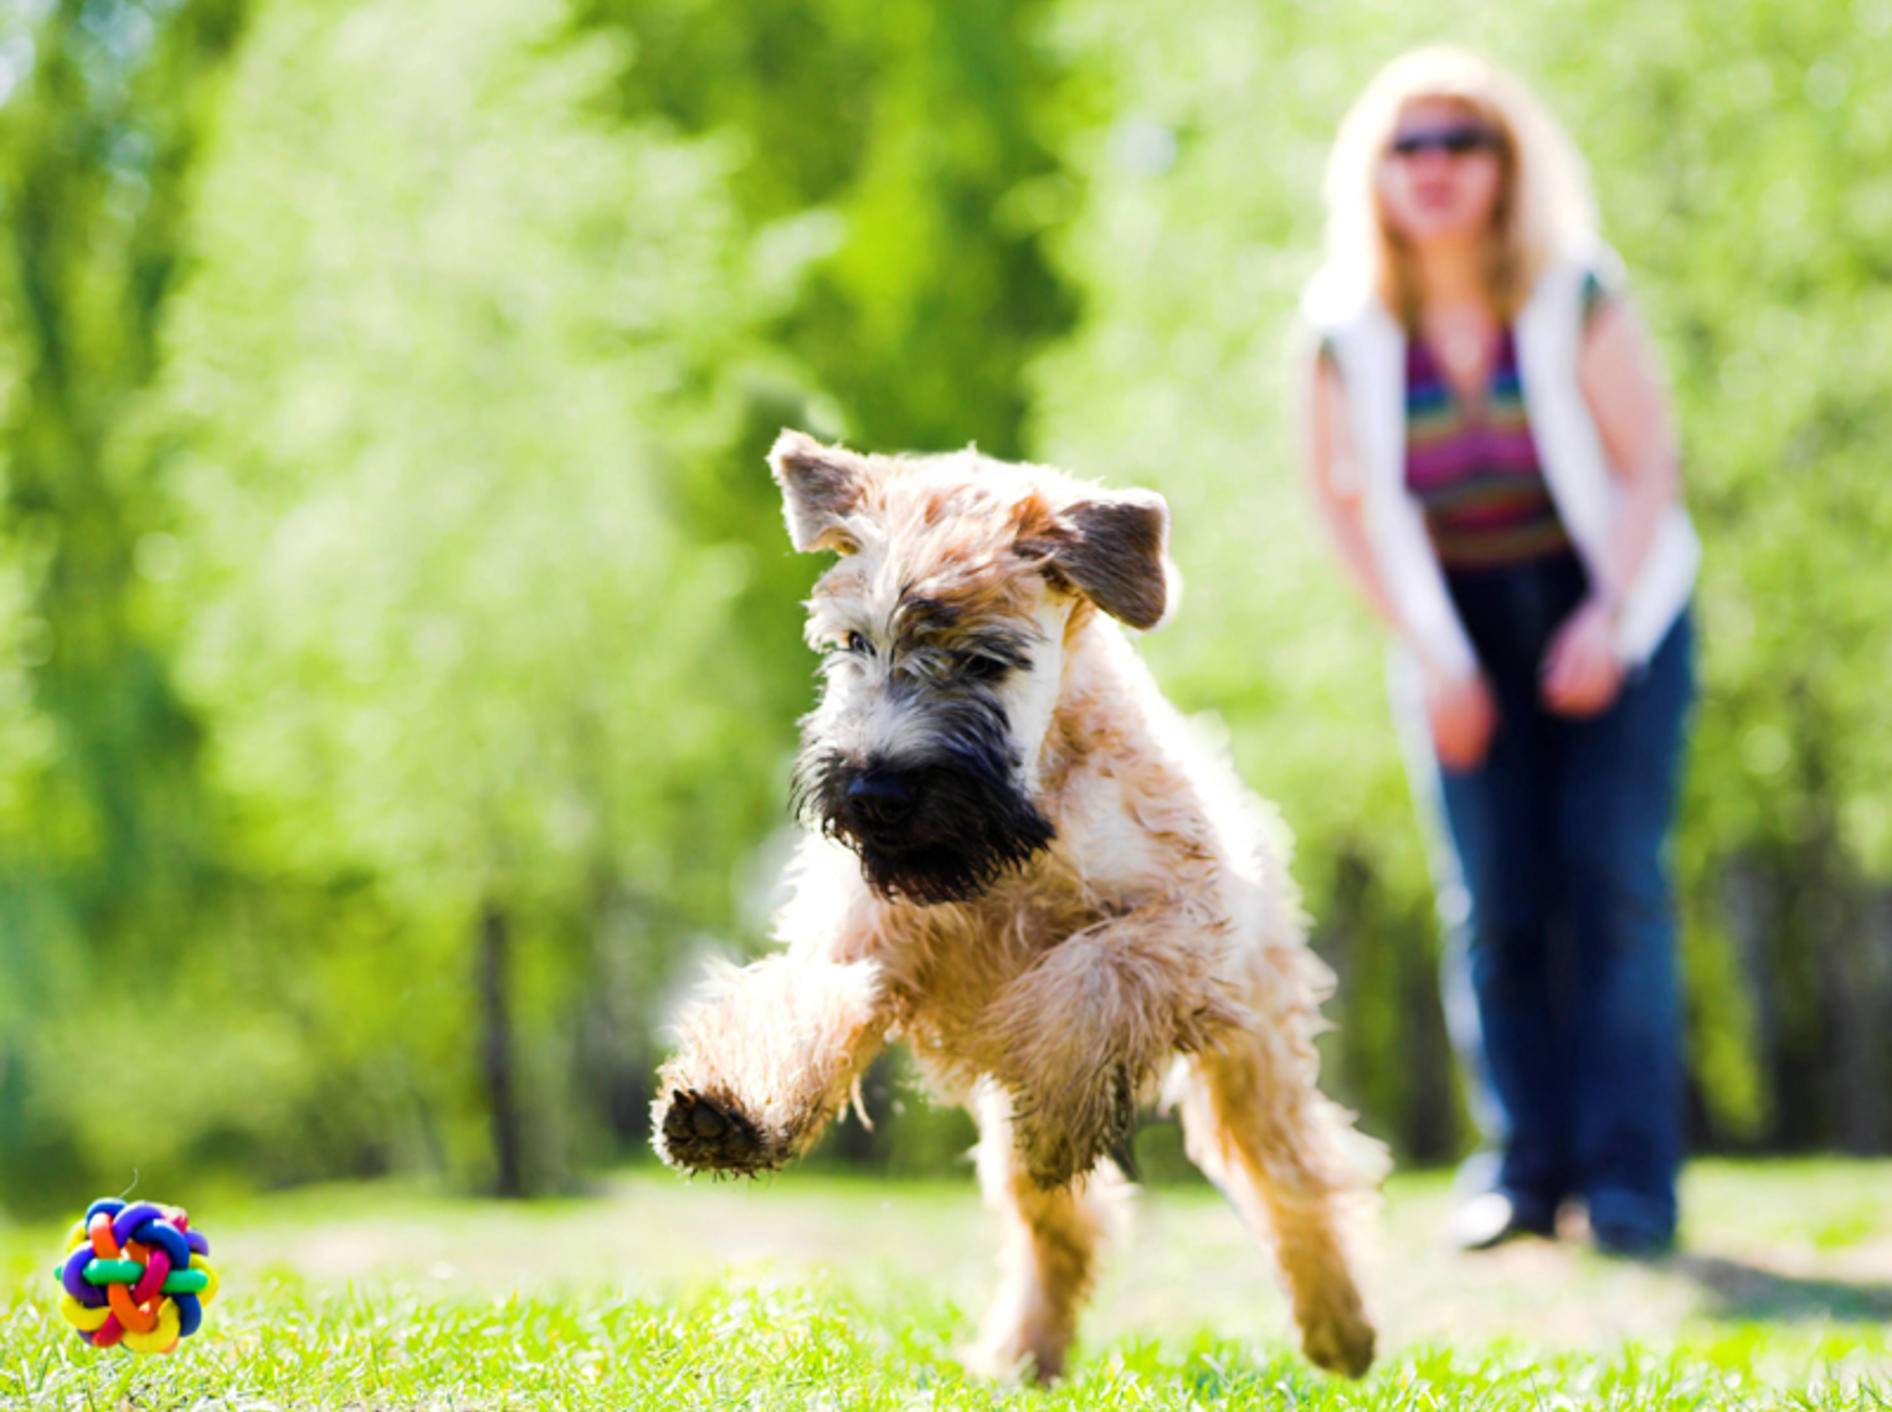 "Hui, das macht Spaß!": So sehen glückliche Hunde aus – Shutterstock / Denis Babenko